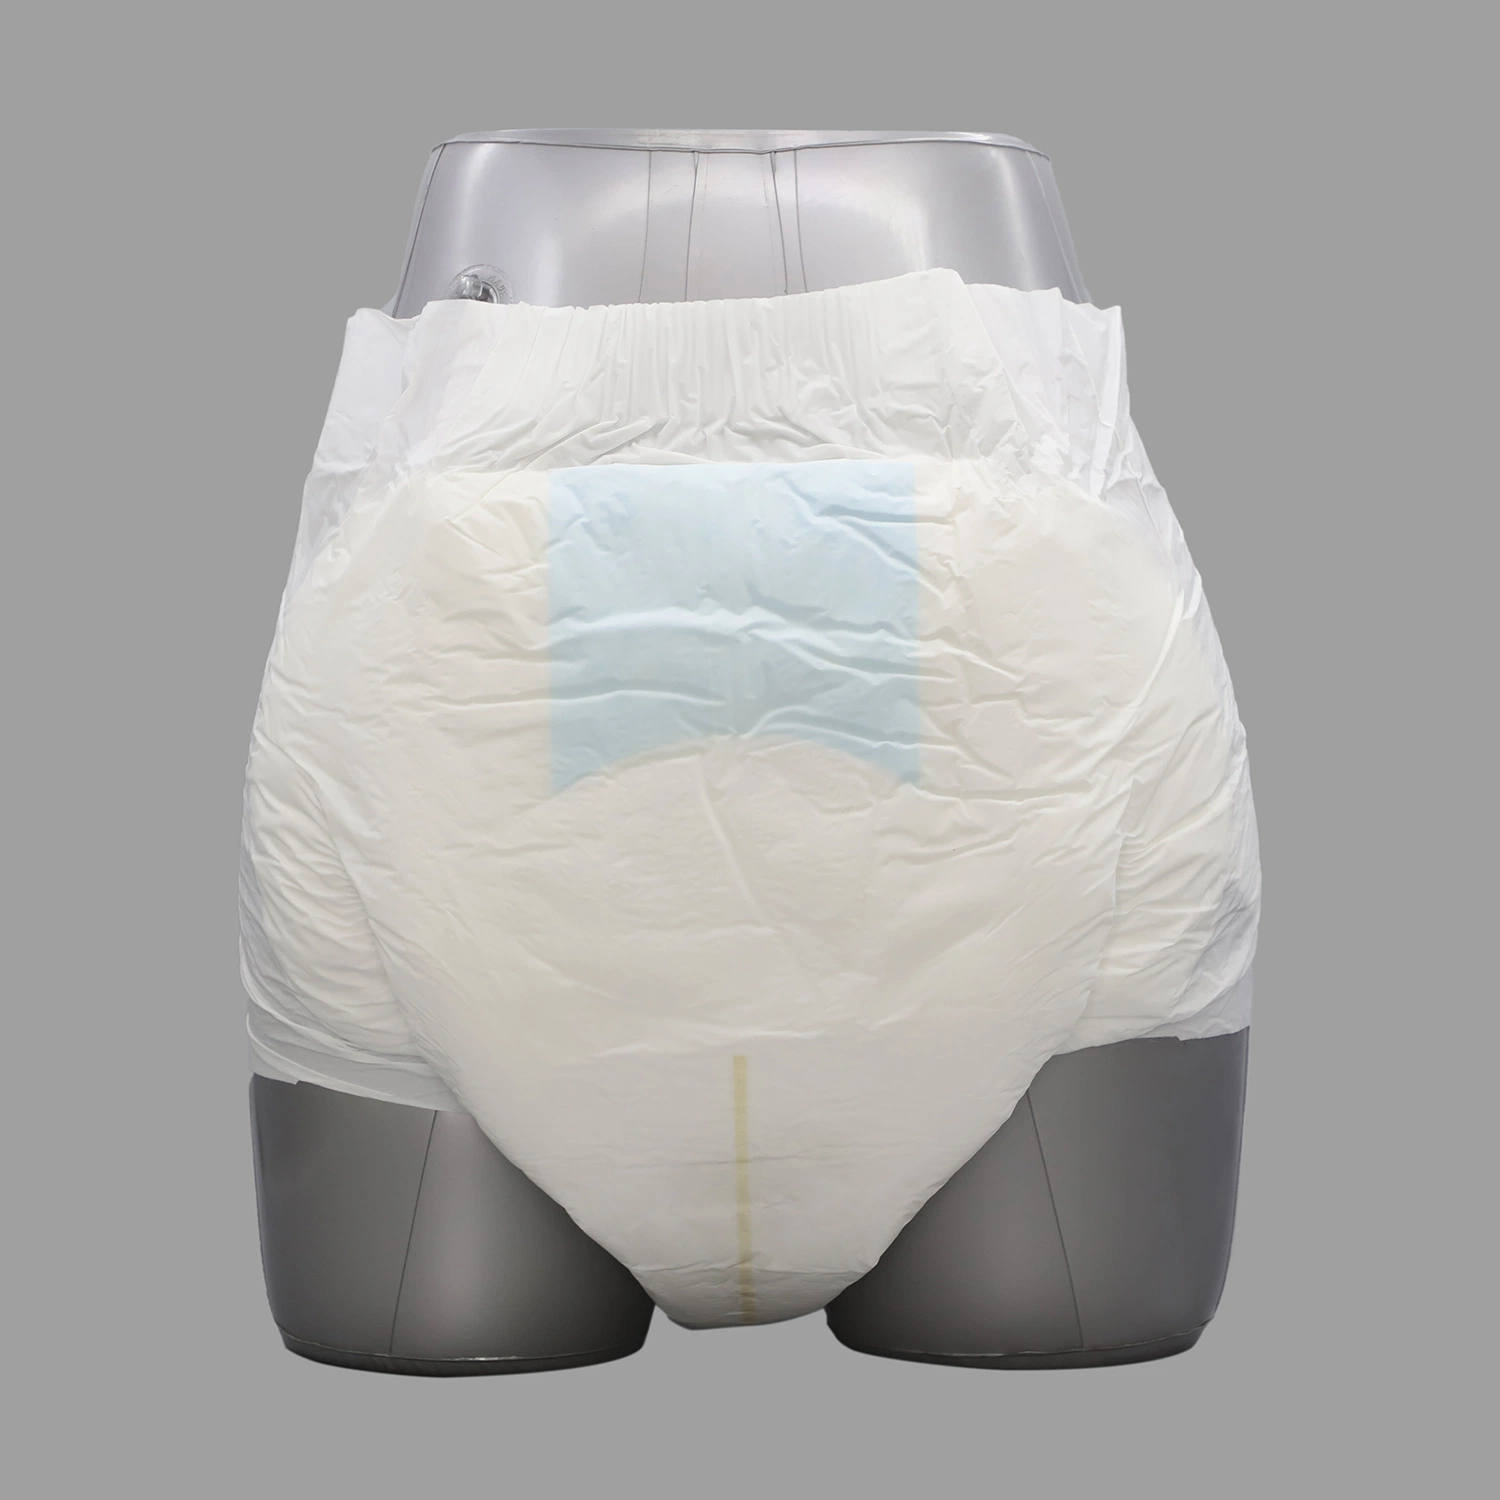 Couches Factory plastique jetable adulte tirer couches vers le haut, gratuit adulte couches pantalons fait en Chine Hot Products